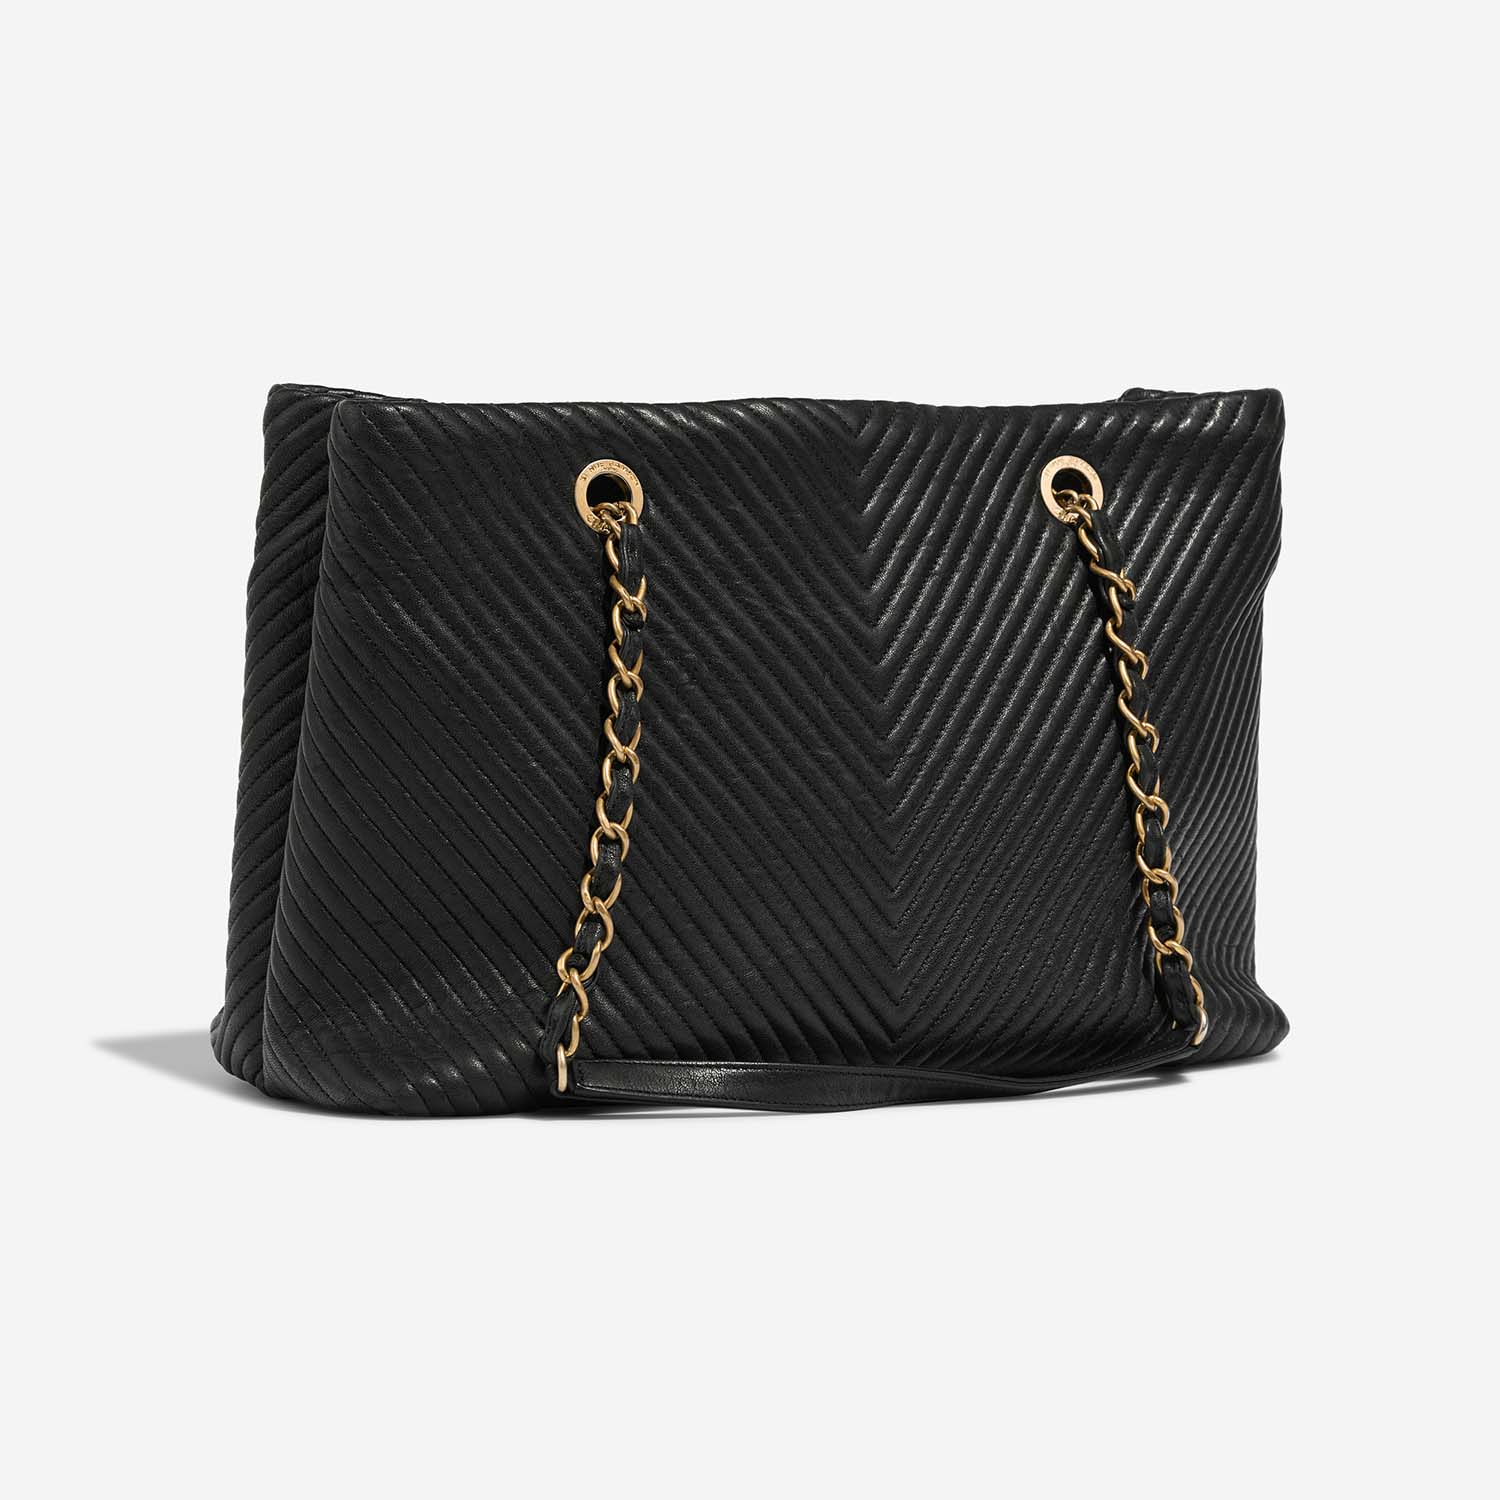 Chanel GST Large Black Side Back | Sell your designer bag on Saclab.com